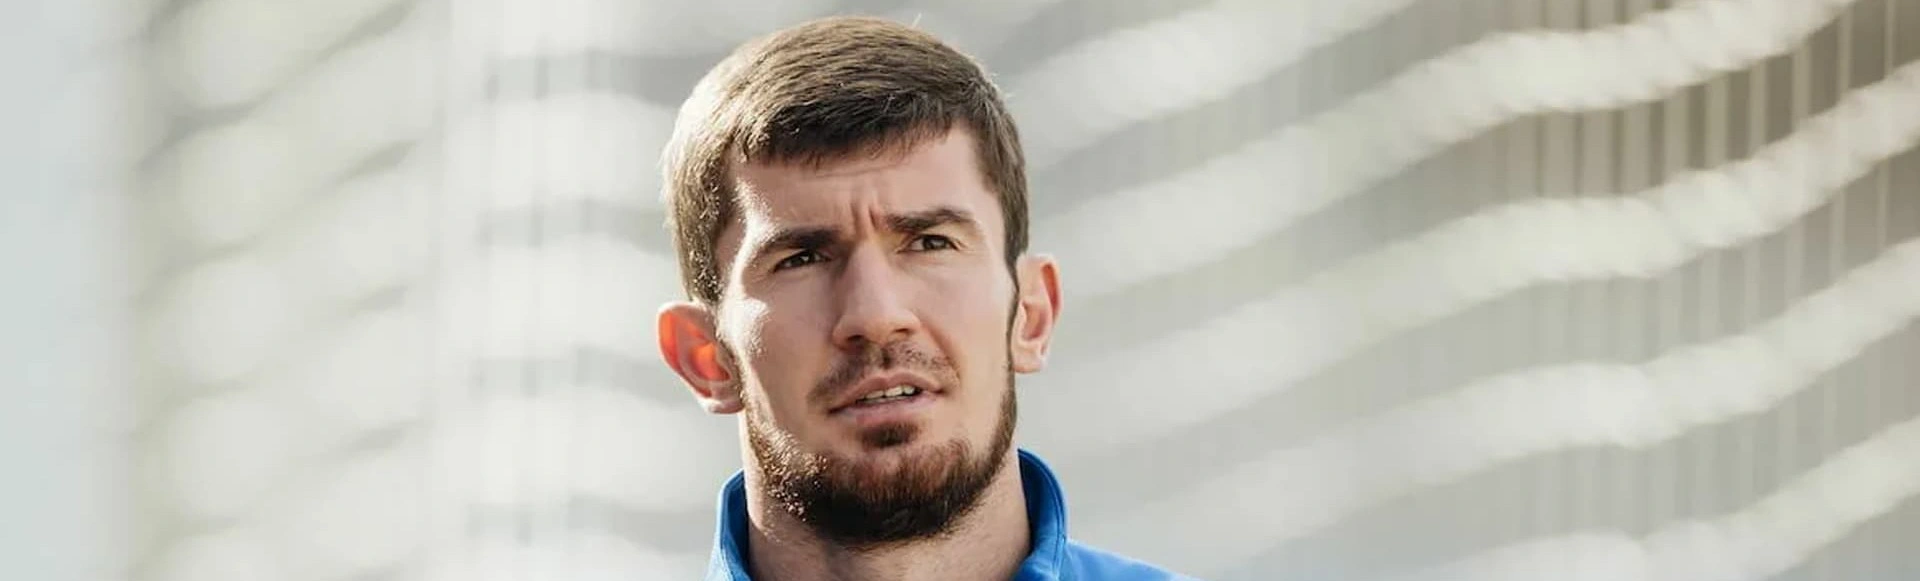 Заурбек Плиев стал футболистом «Уфы»
